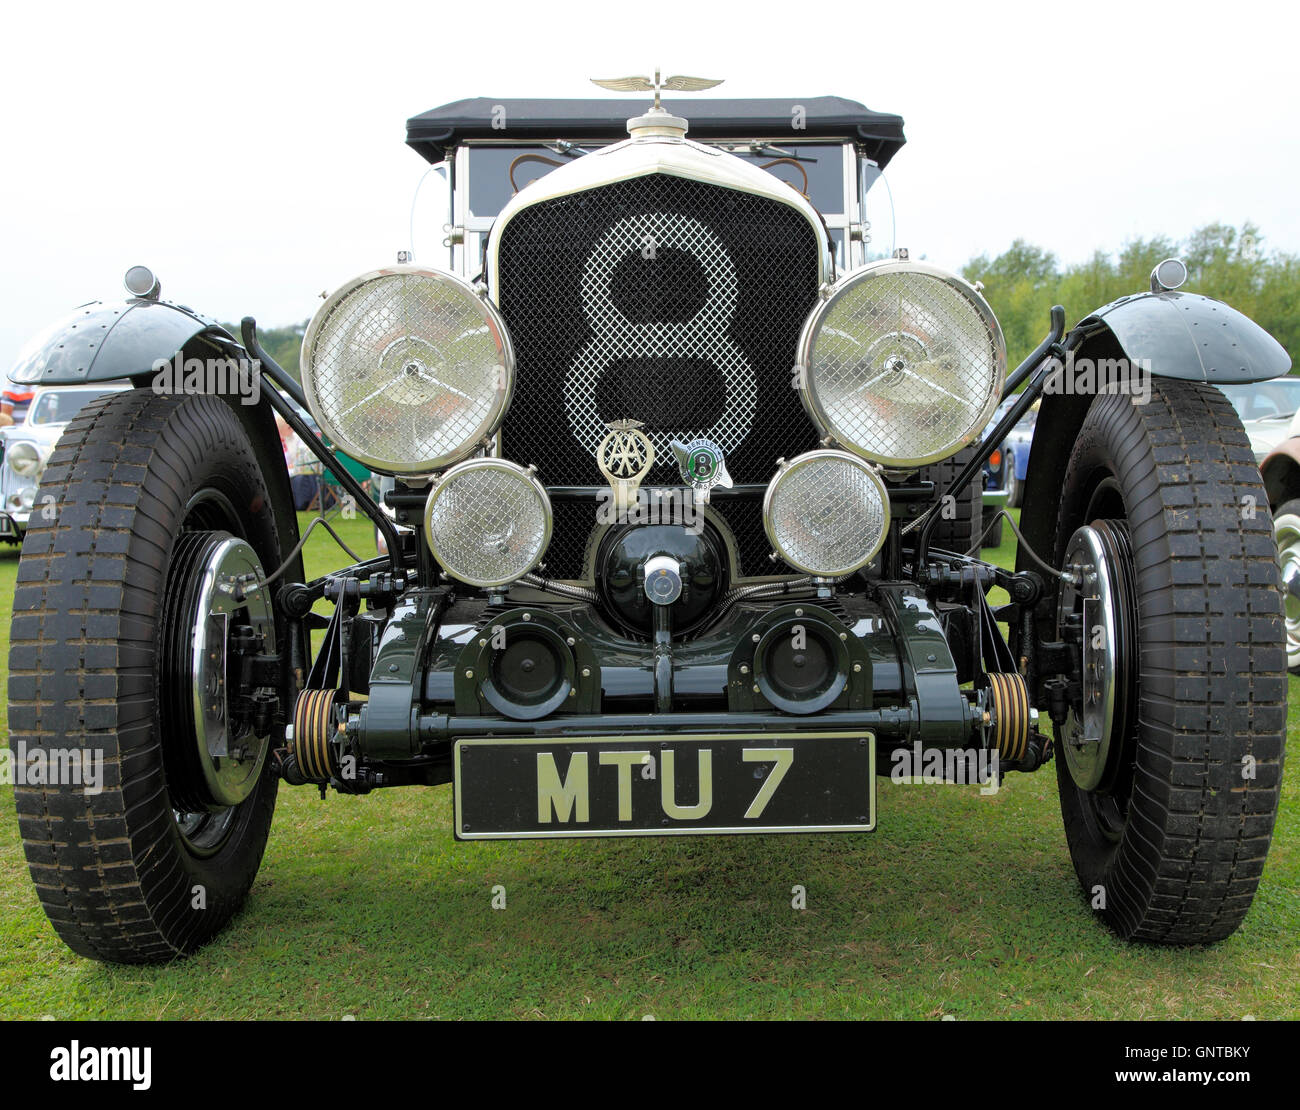 Bentley coupé 8, classique, vintage automobile c. 1930 voitures automobiles automobile anglais England UK à huit cylindres britannique Banque D'Images